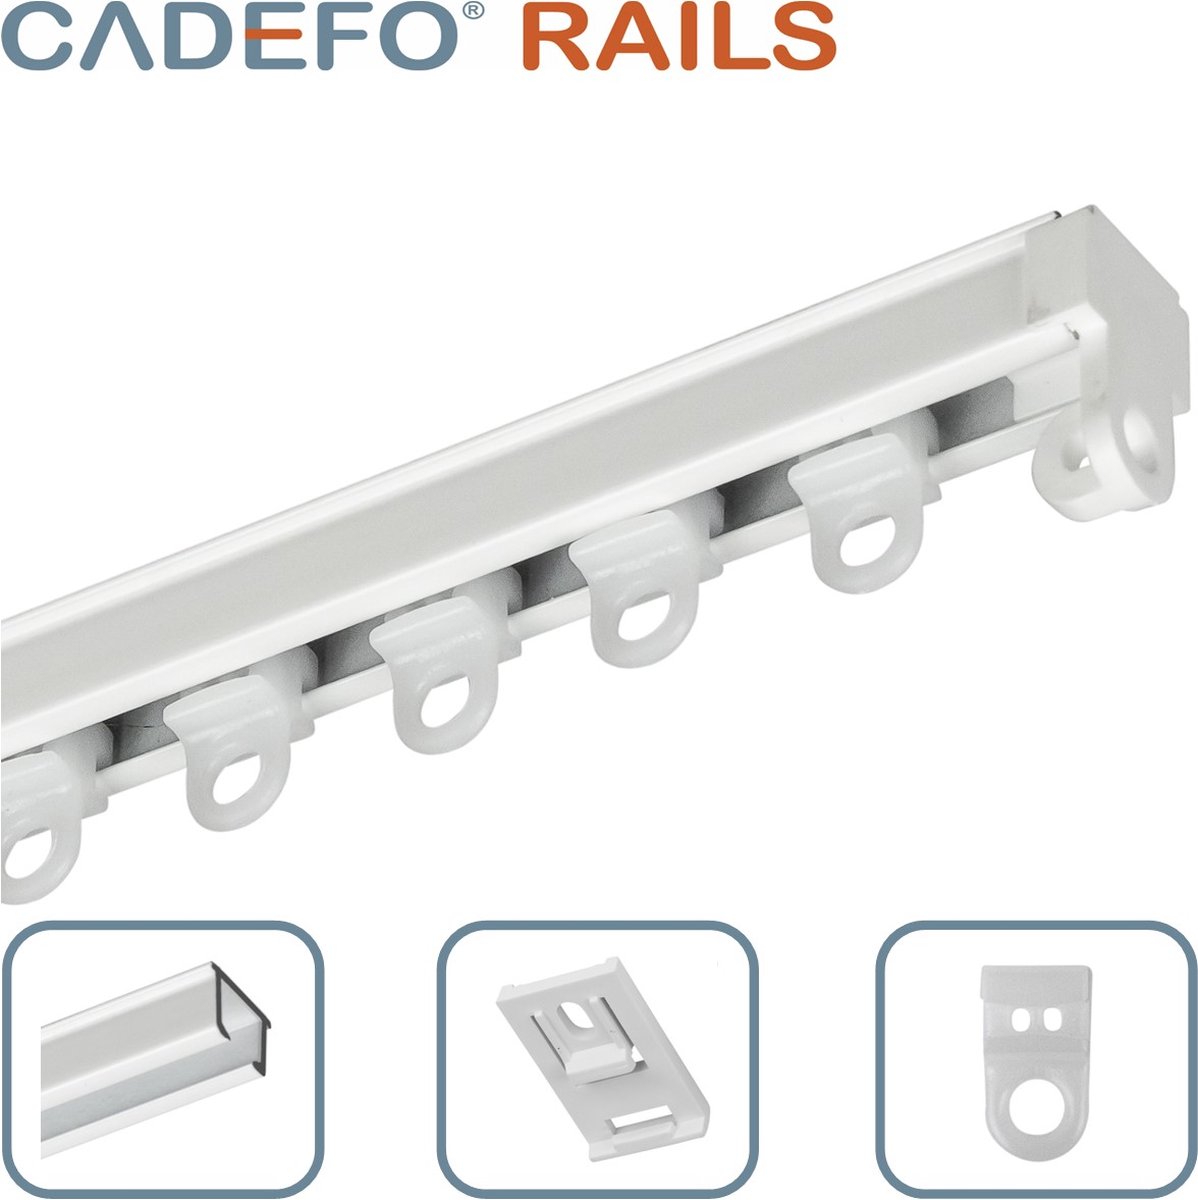 CADEFO RAILS (251 - 300 cm) Gordijnrails - Compleet op maat! - UIT 1 STUK - Leverbaar tot 6 meter - Plafondbevestiging - Lengte 291 cm